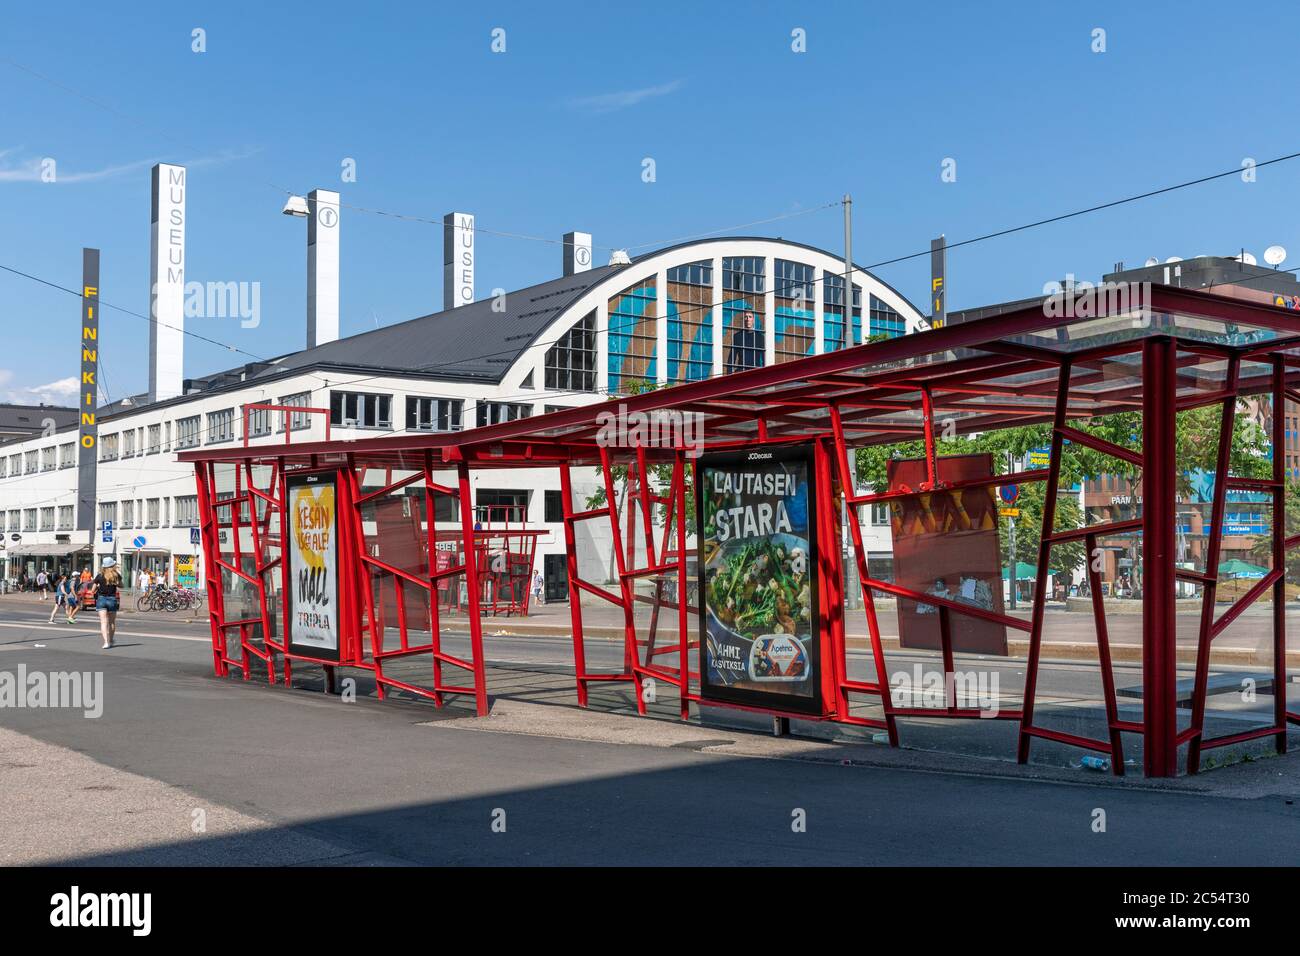 La città di Helsinki ha costruito delle fermate del tram di design in centro. I binari e le fermate costano quasi 2 milioni di euro. Attualmente i tram vengono reindirizzati e le fermate non sono in uso. Foto Stock